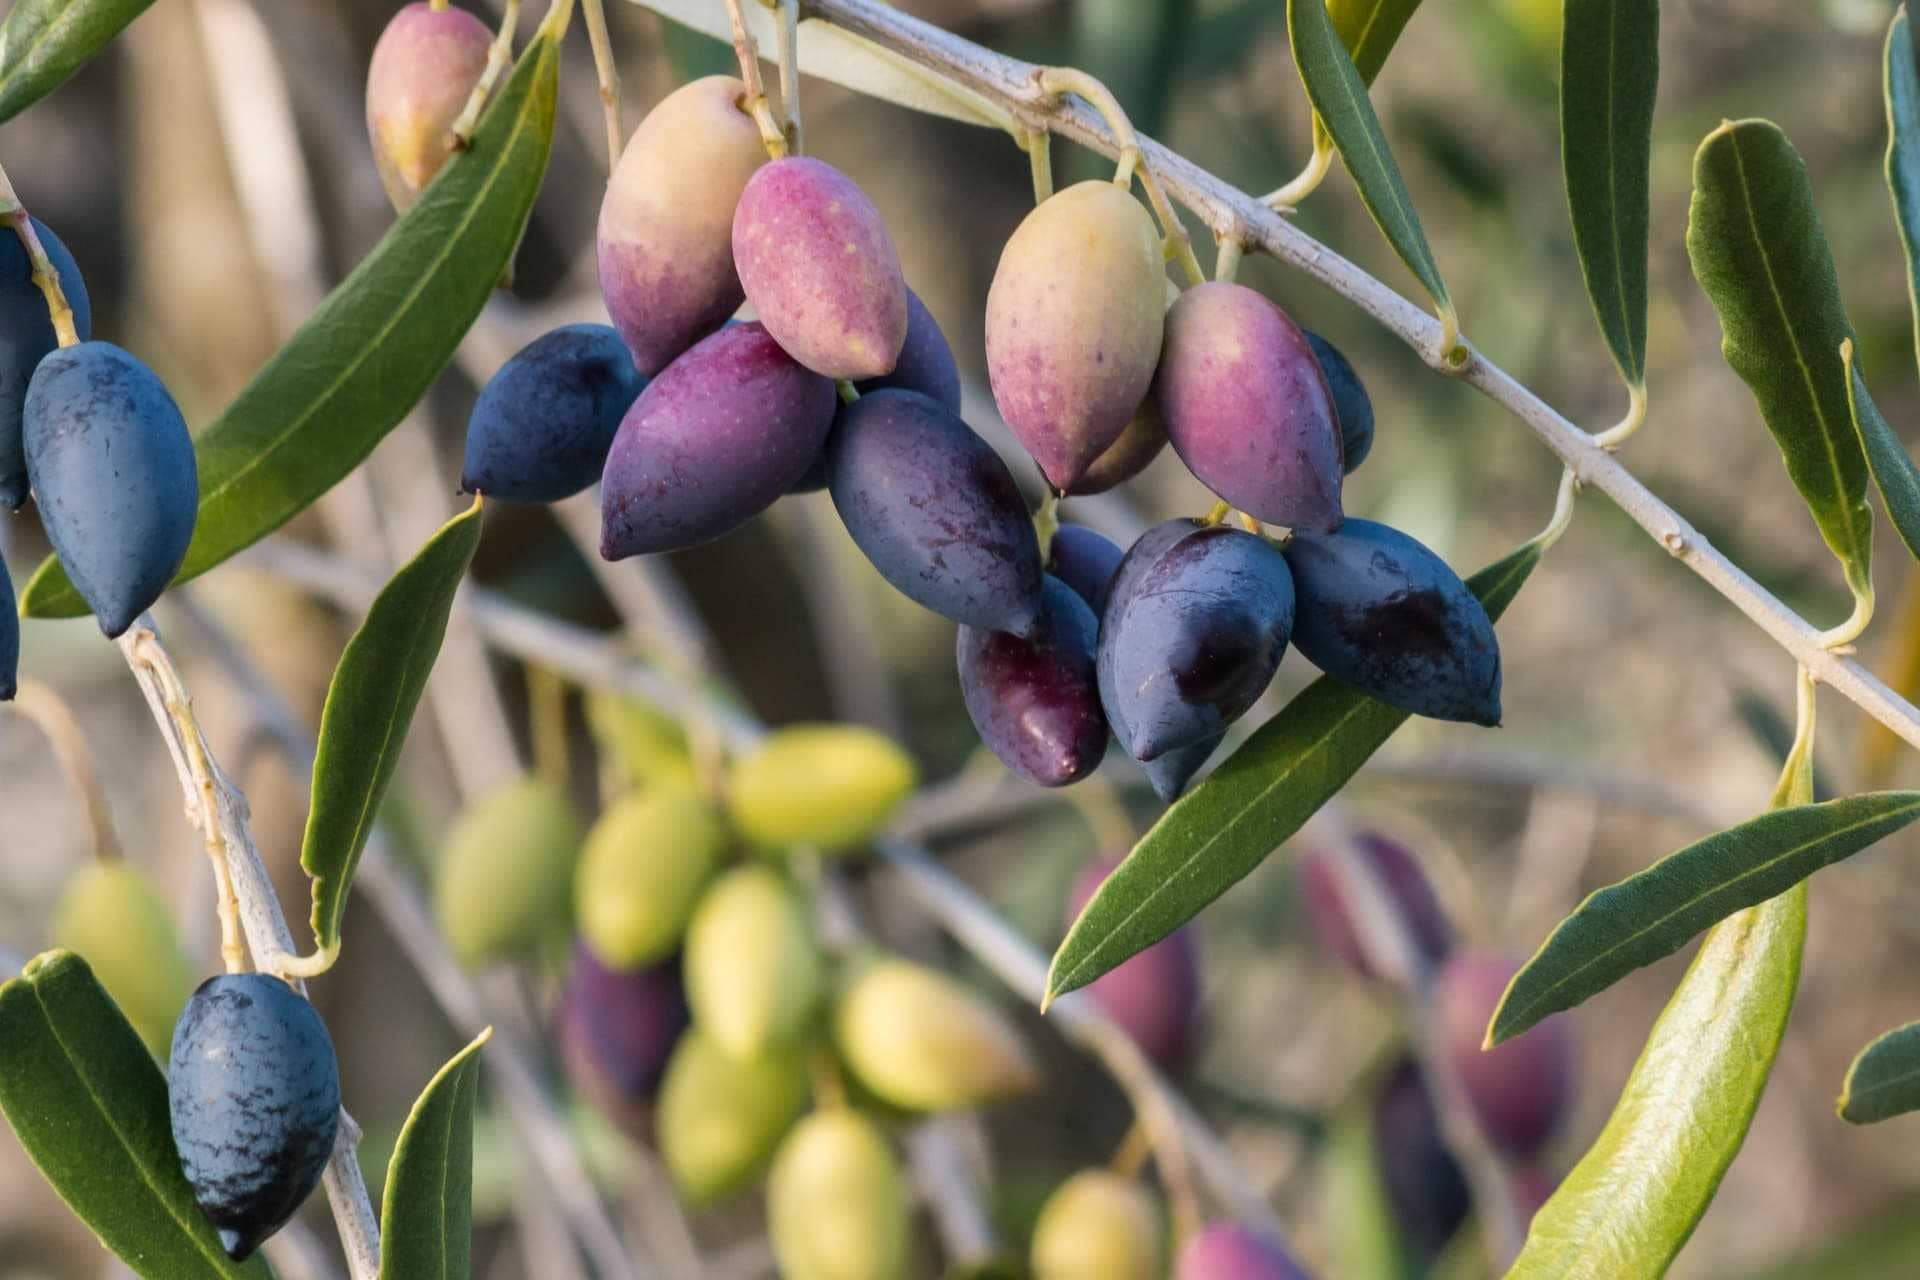 produktionsforscher-suchen-um-ein-besseres-verständnis-von-olivfrüchten-entwicklung-olivenöl-zeiten